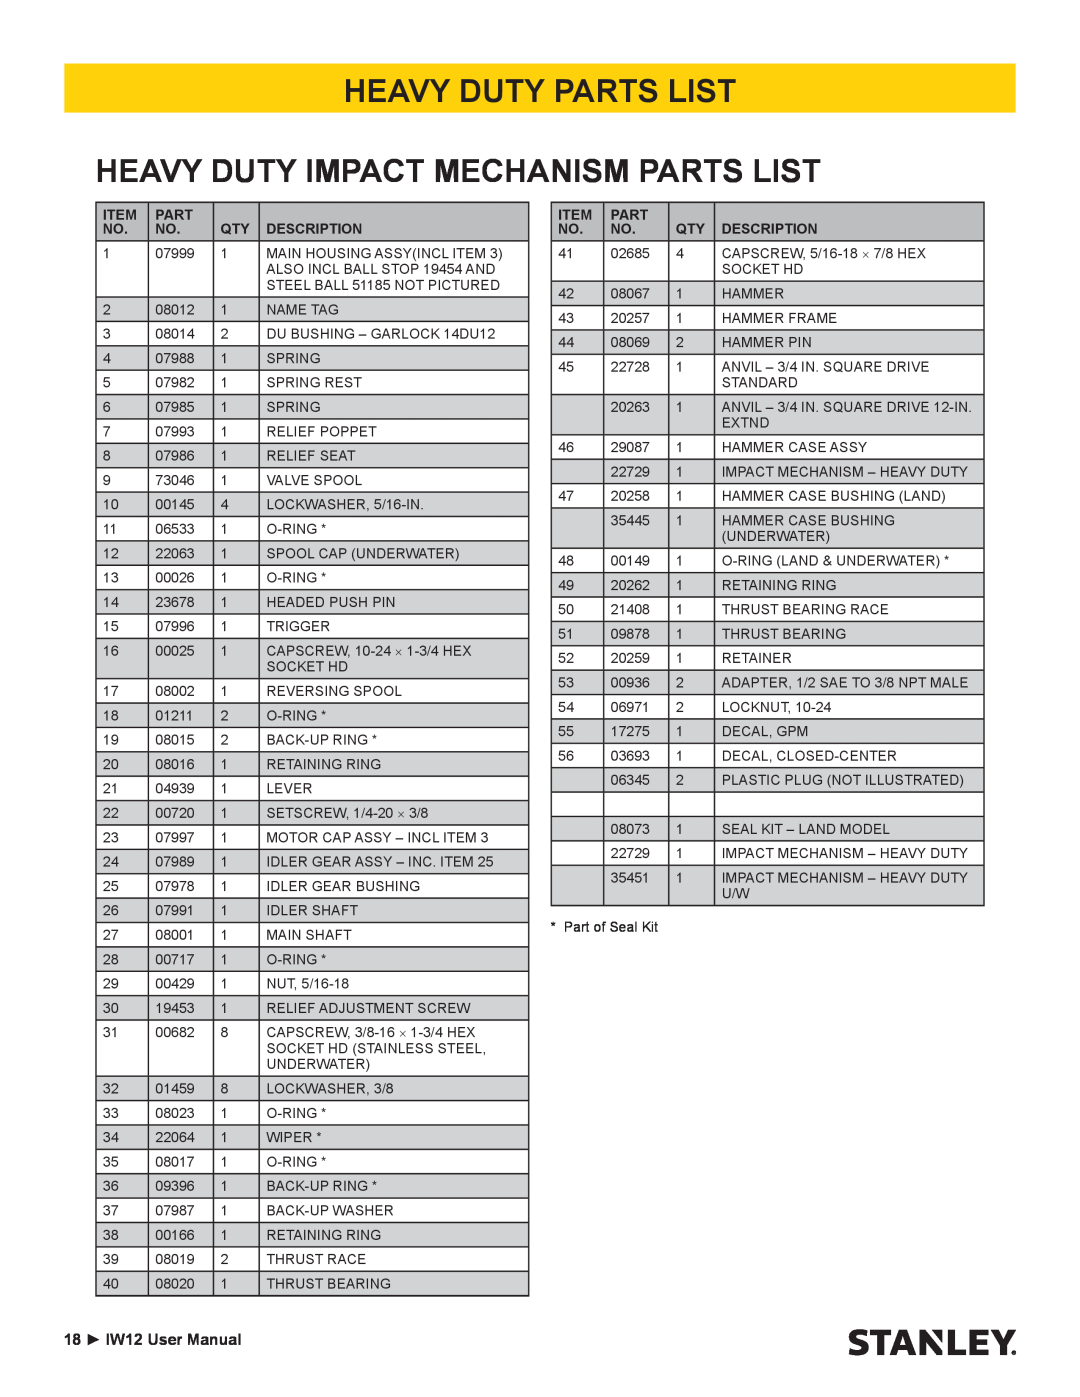 Stanley Black & Decker user manual Heavy Duty Parts List Heavy Duty Impact Mechanism Parts List, 18 IW12 User Manual 